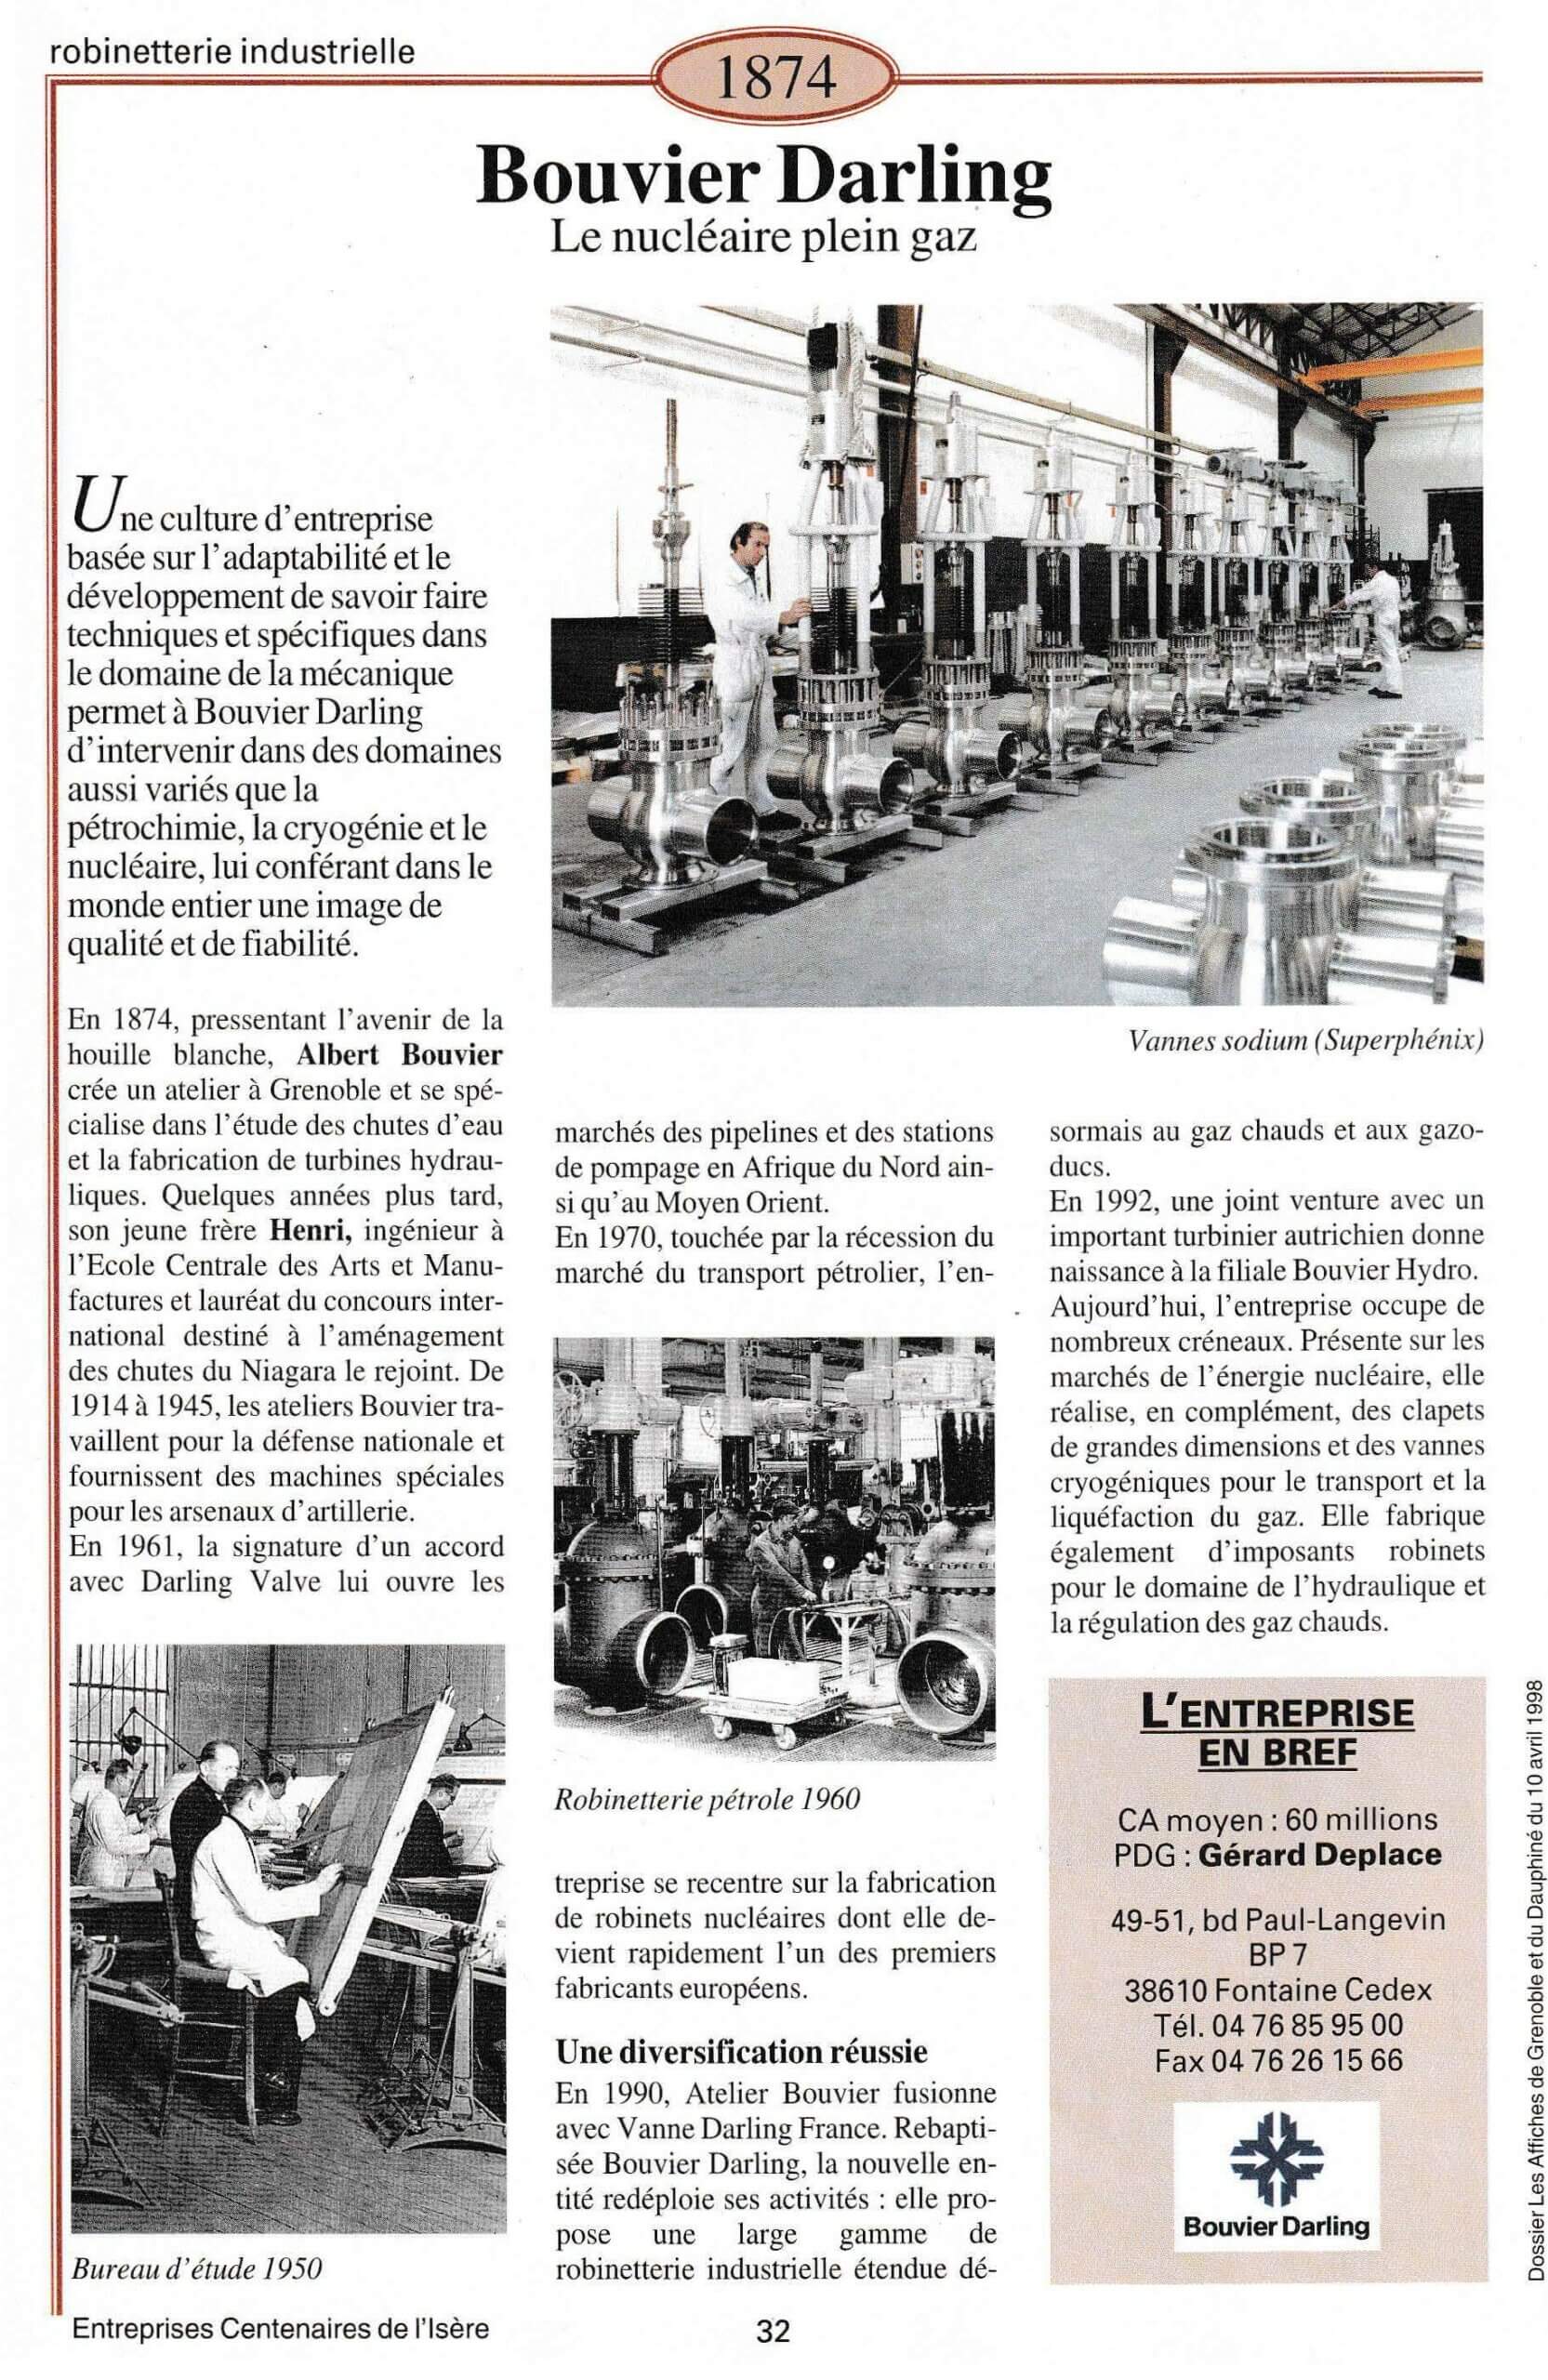 Bouvier Darling - fiche du supplément "Entreprises centenaires en Isère", publié par Les affiches de Grenoble et du Dauphiné, juin 1998.